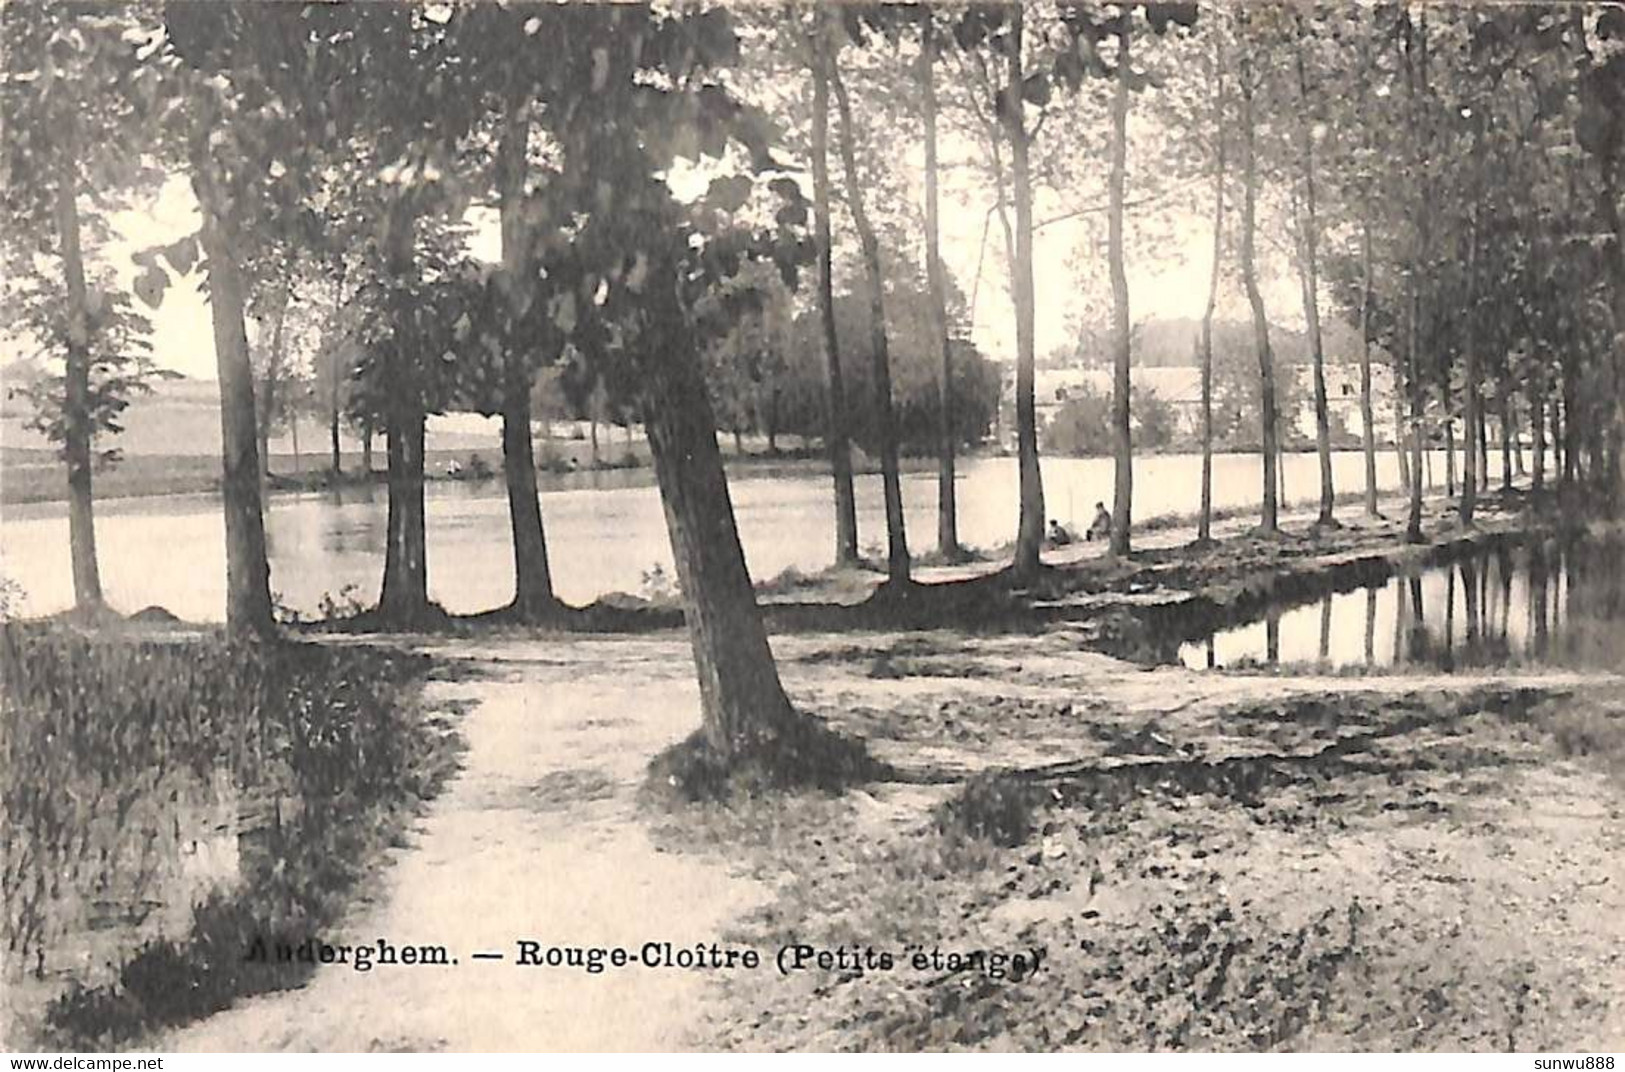 Auderghem - Rouge-Cloître (Petits étangs) - Auderghem - Oudergem